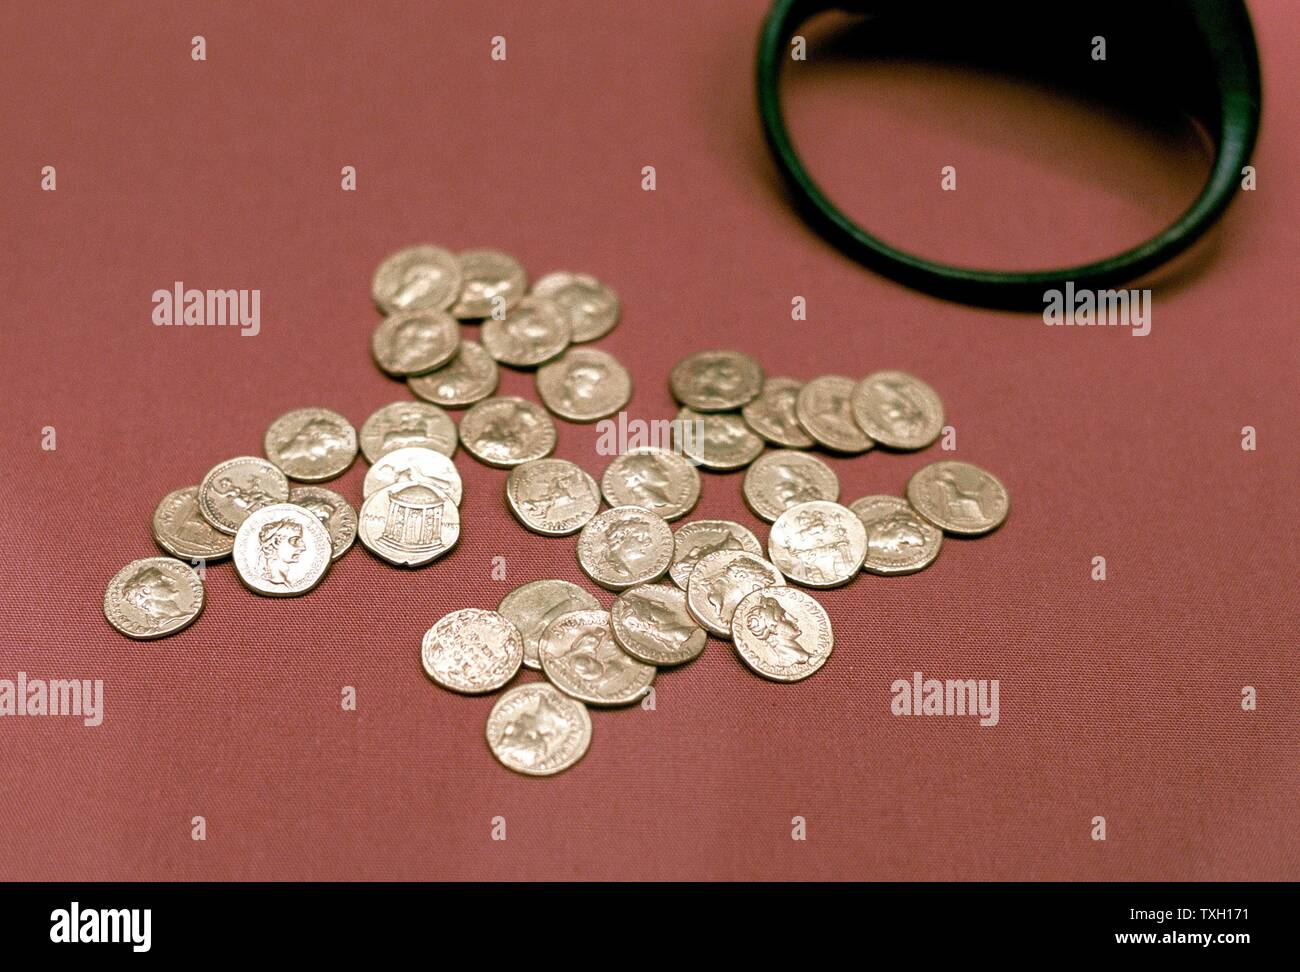 Montón de monedas de oro romanas encontradas en Inglaterra Foto de stock